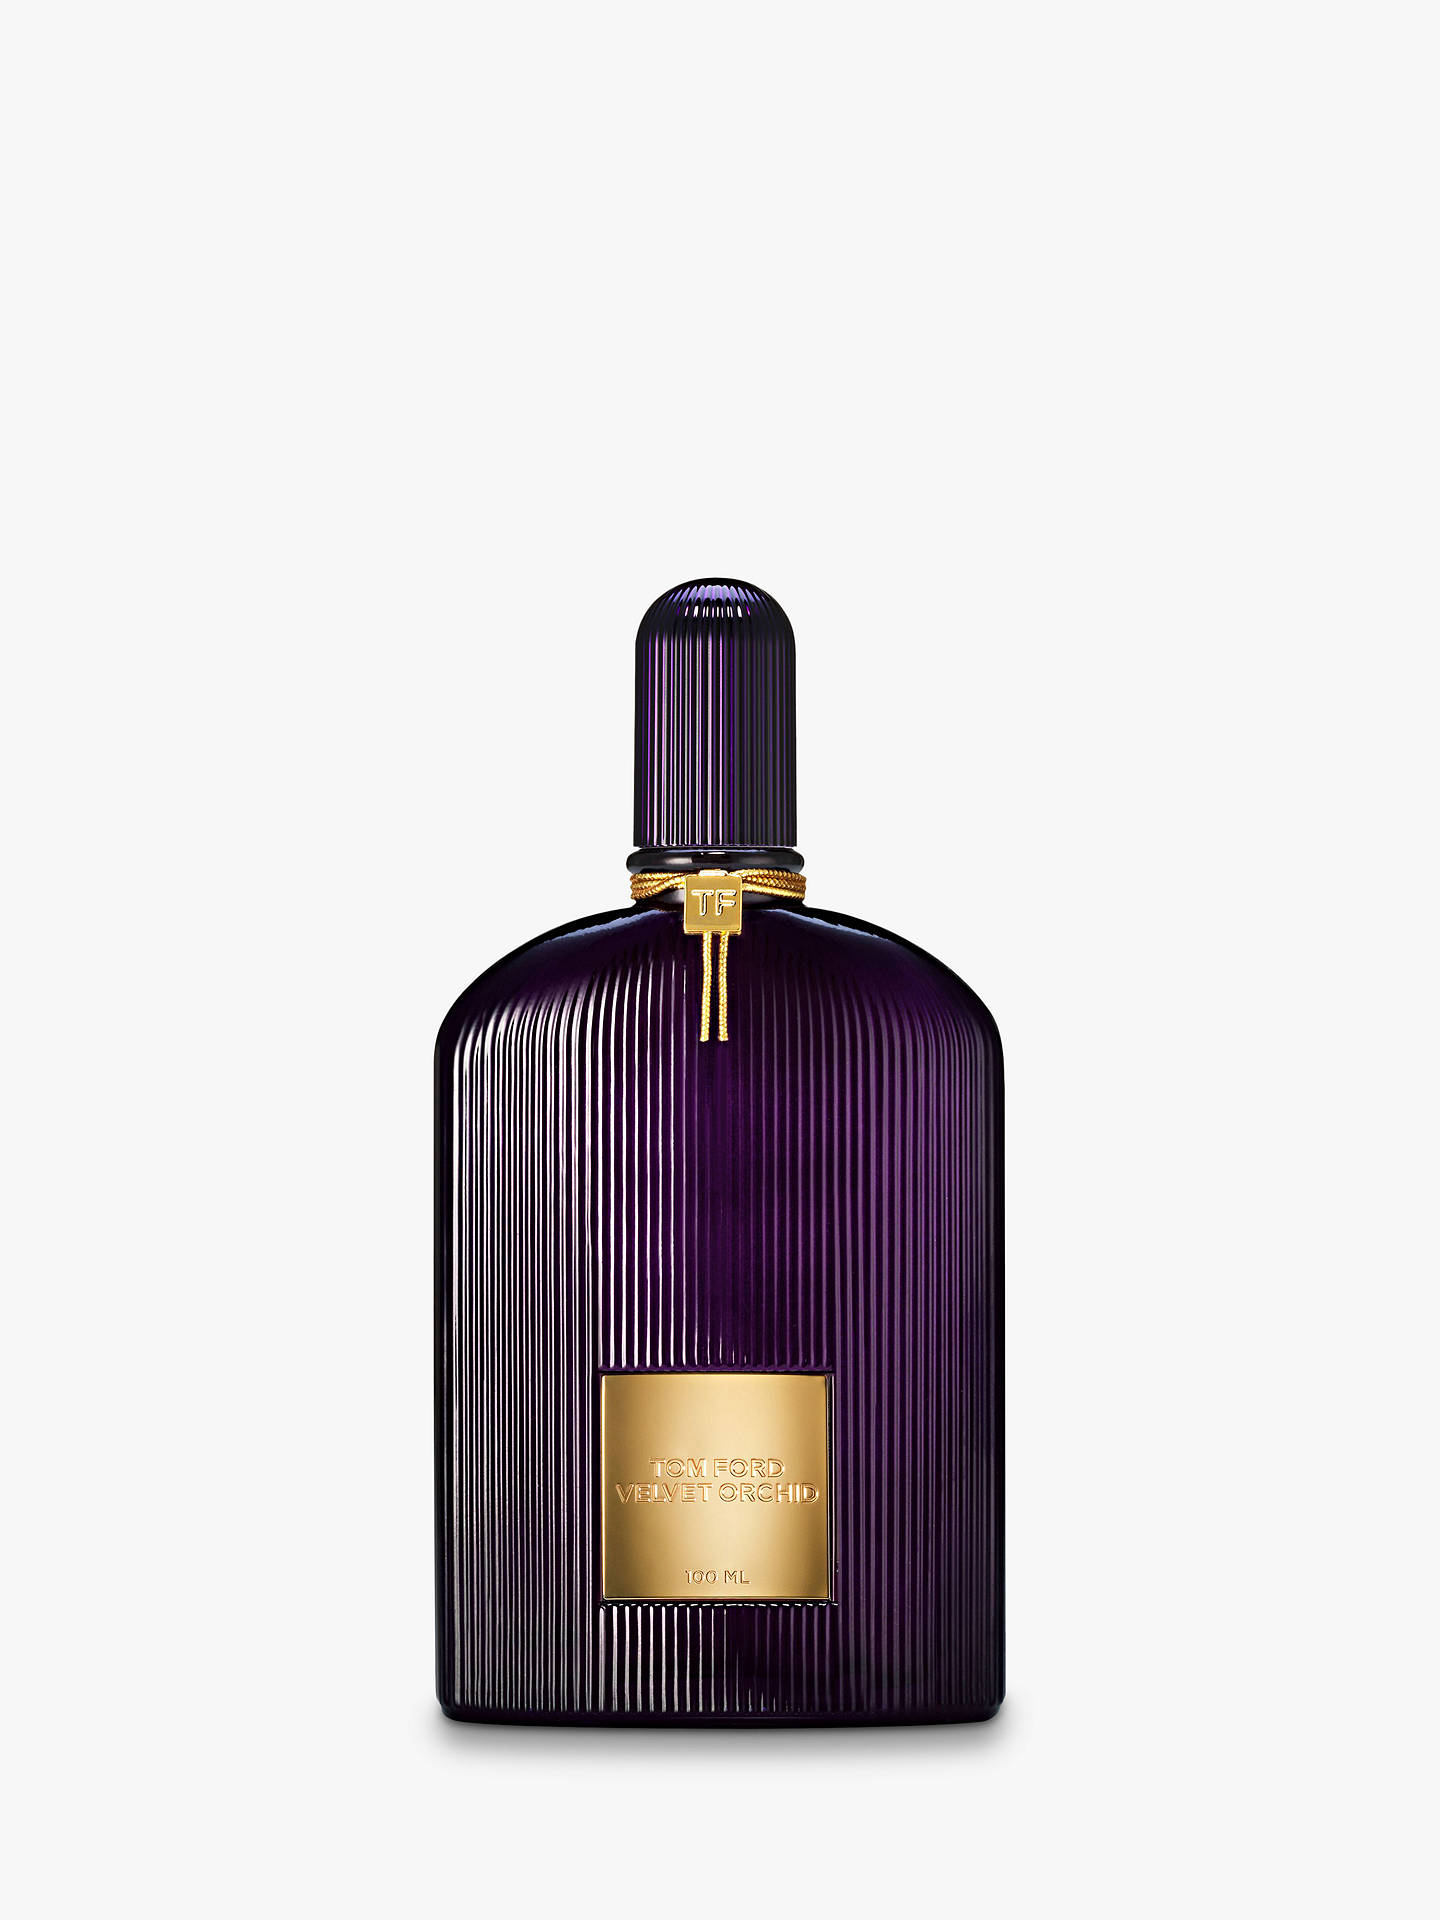 TOM FORD Velvet Orchid Eau de Parfum at John Lewis & Partners